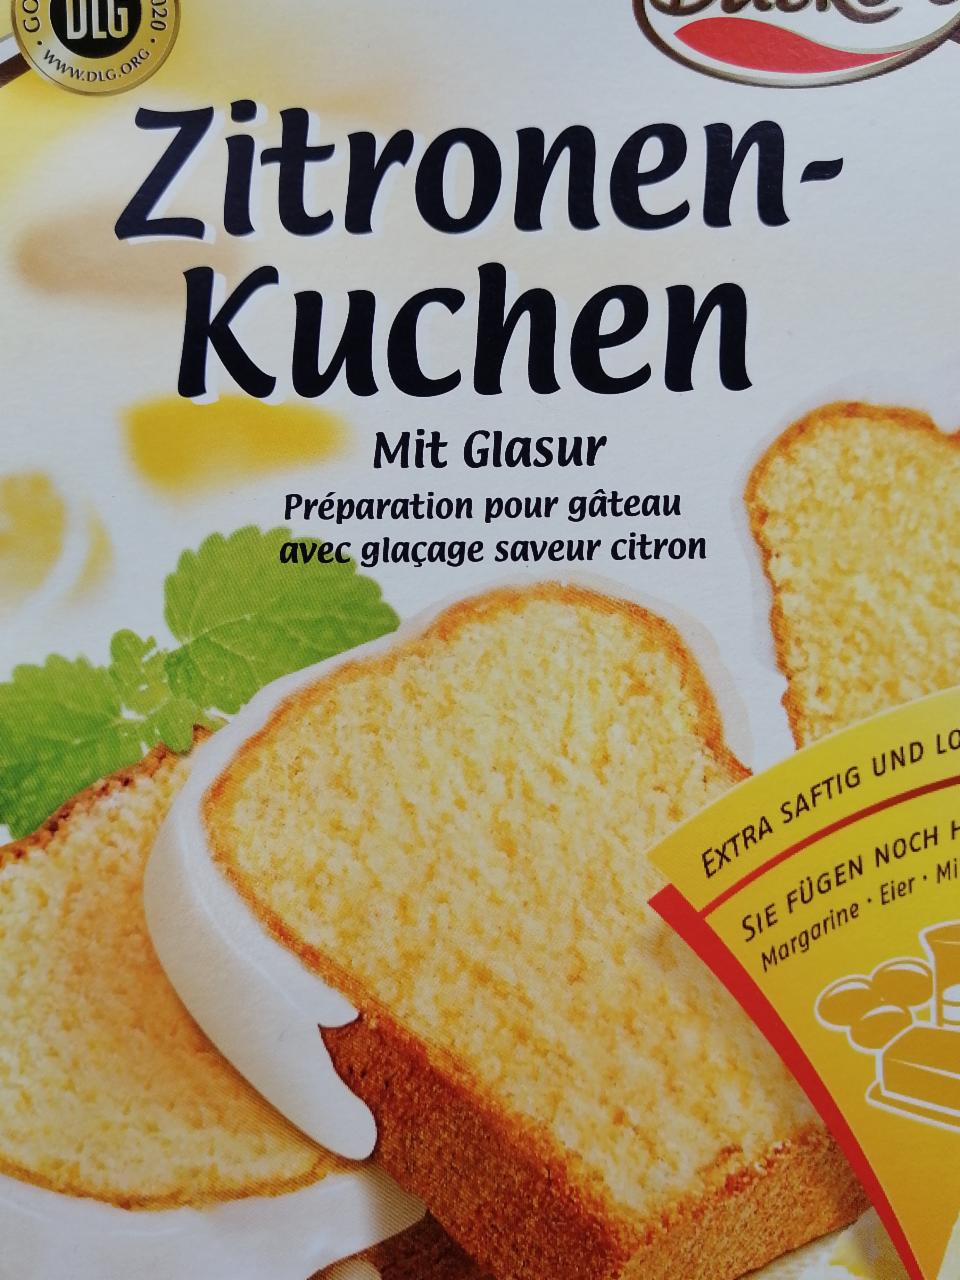 Fotografie - Zitronen-Kuchen mit Glasur Backen